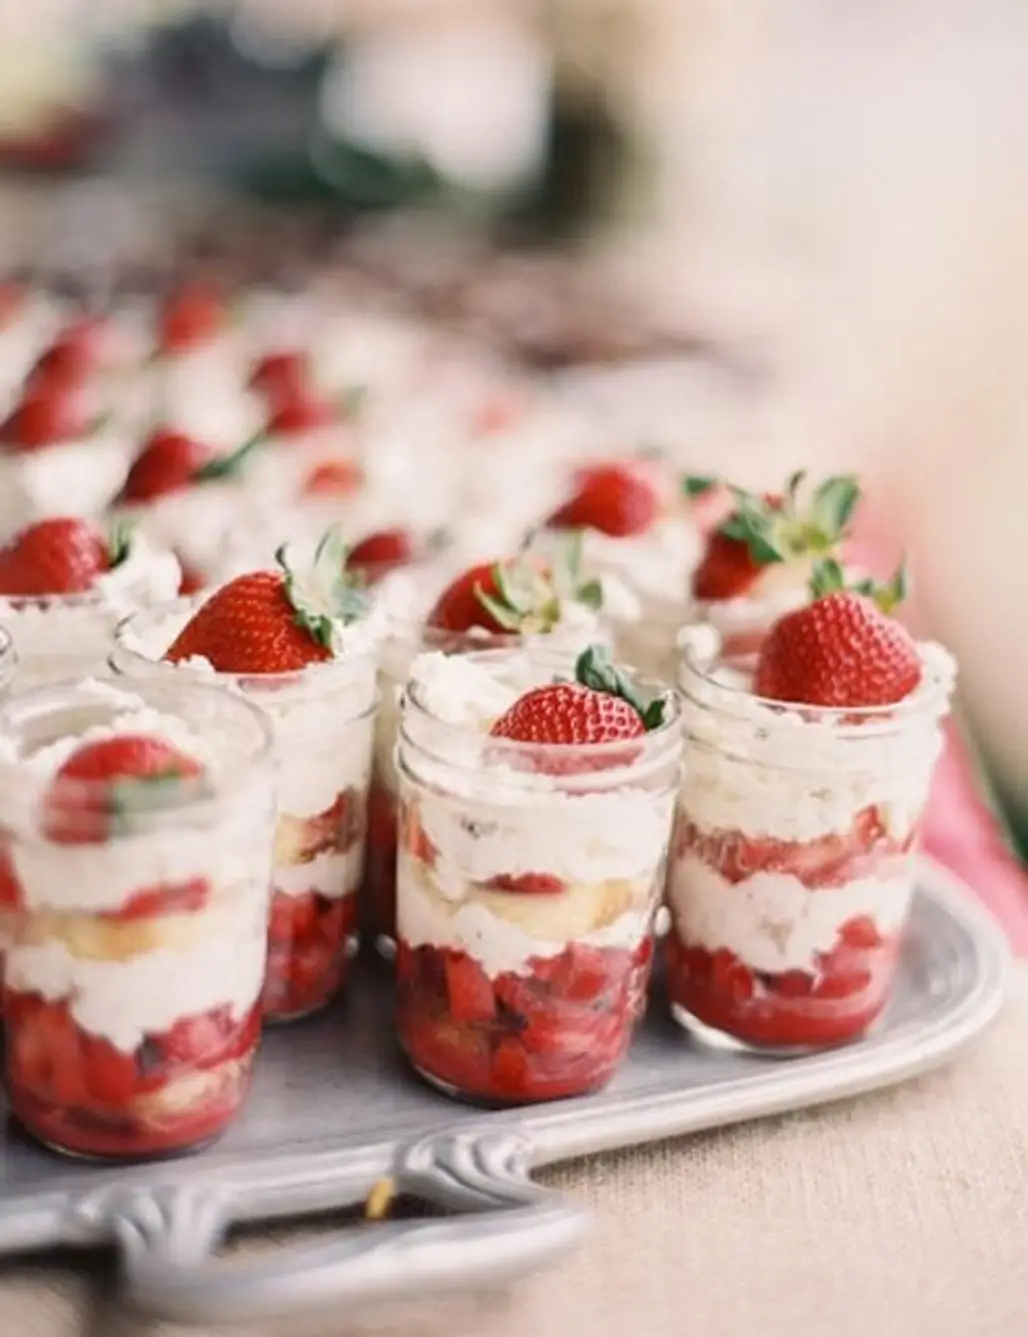 Strawberry Shortcake in a Jar